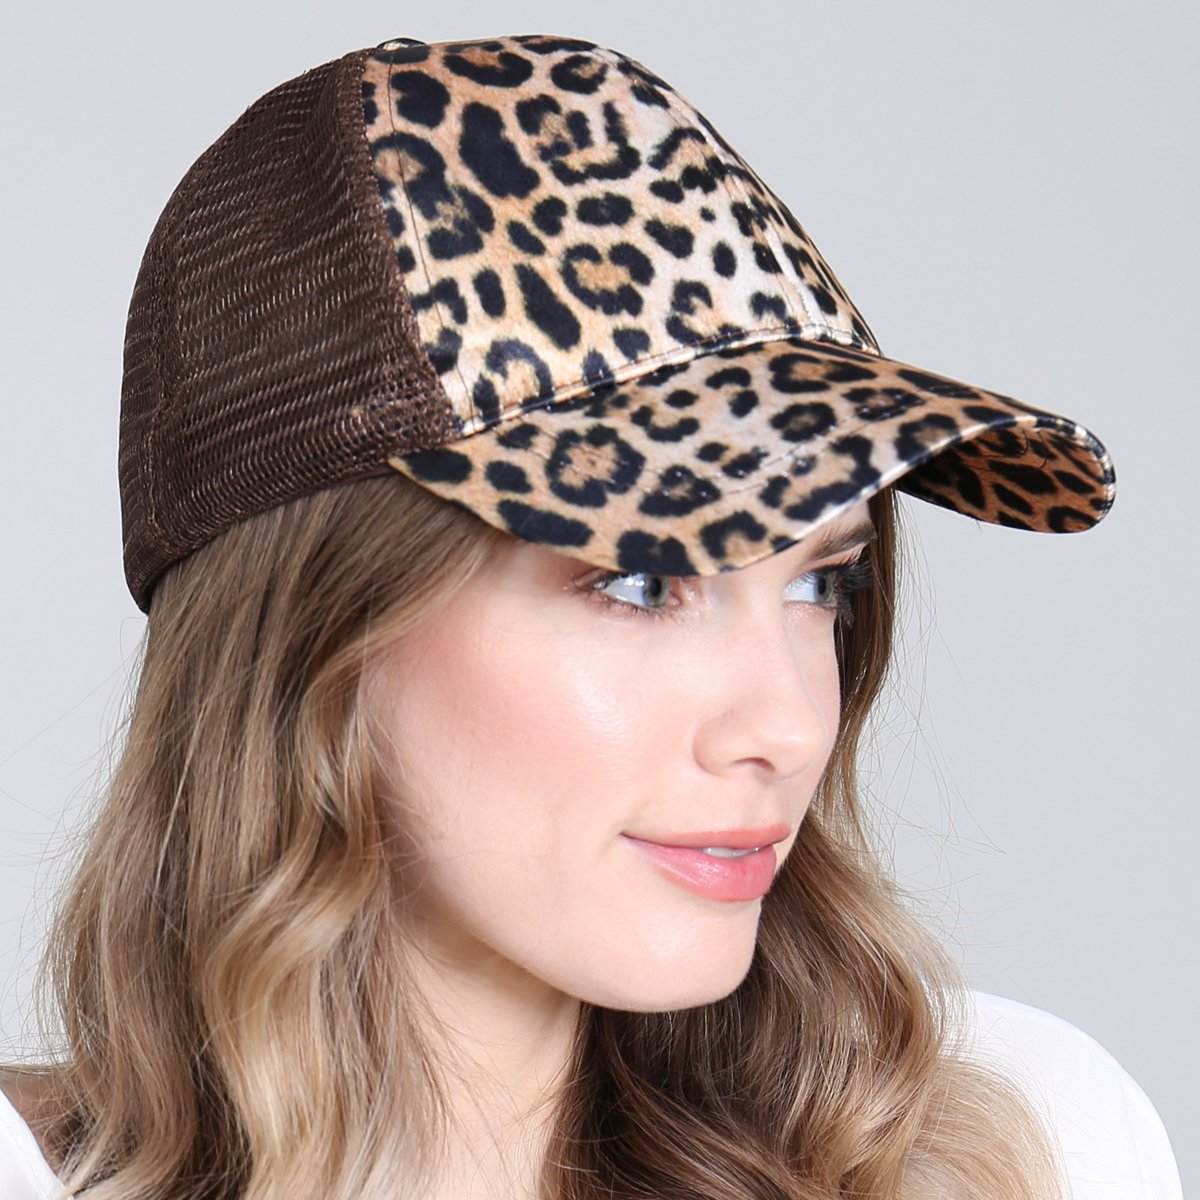 Leopard Skin Printed Net Cap Hat